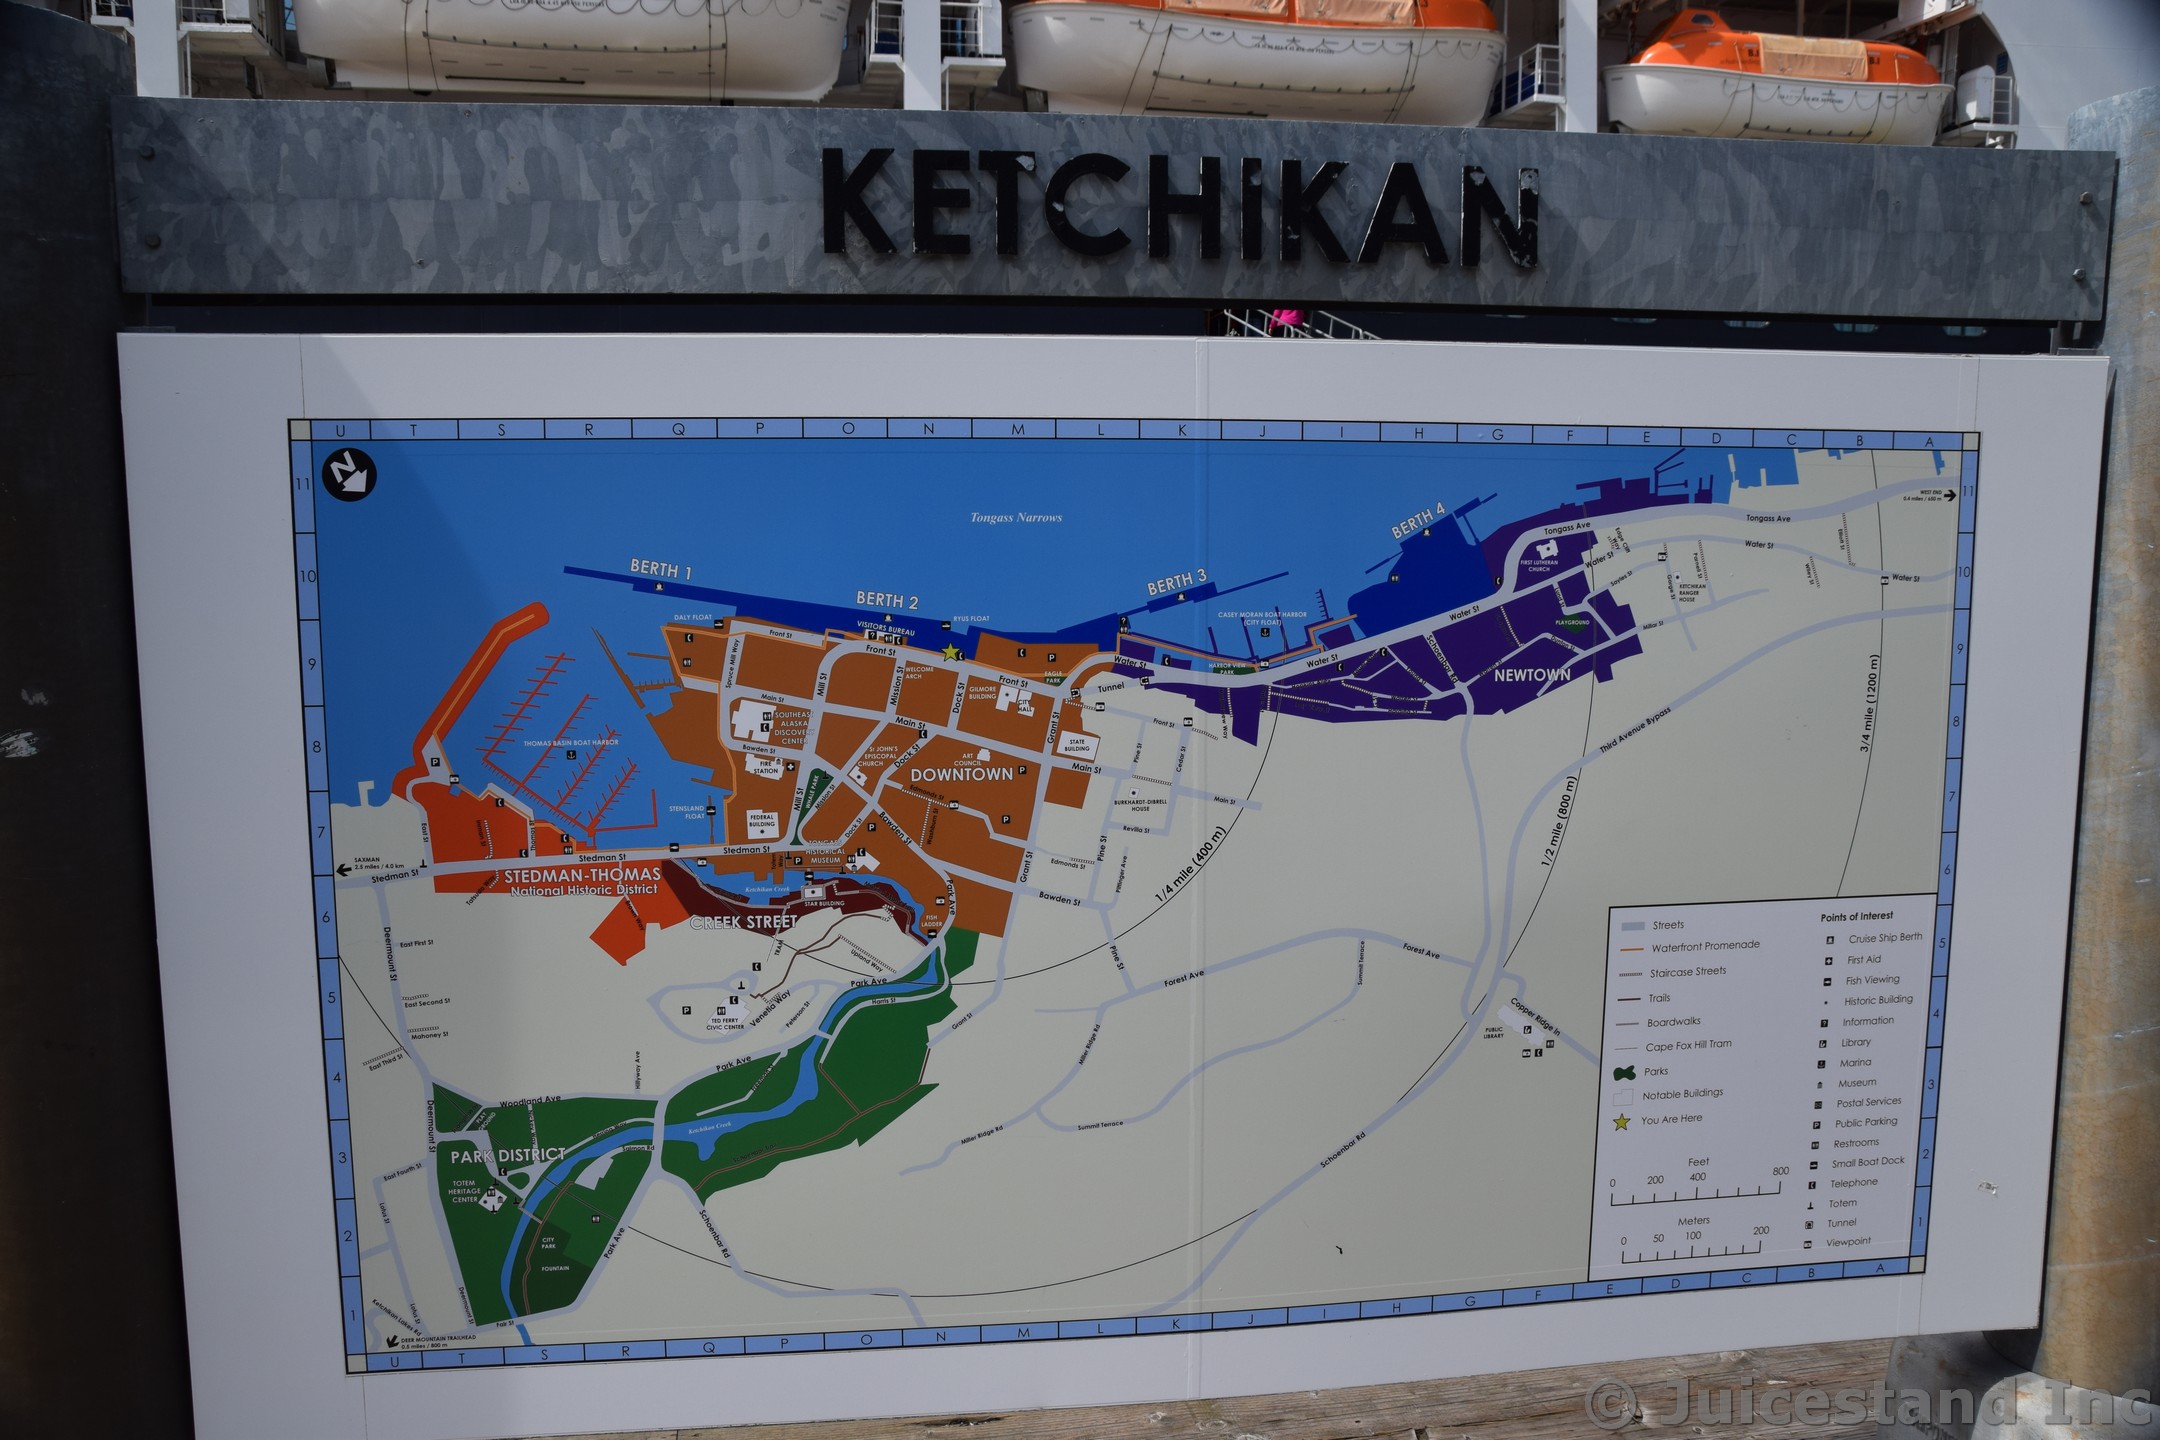 Ketchikan Map and Cruise Ship Berths
